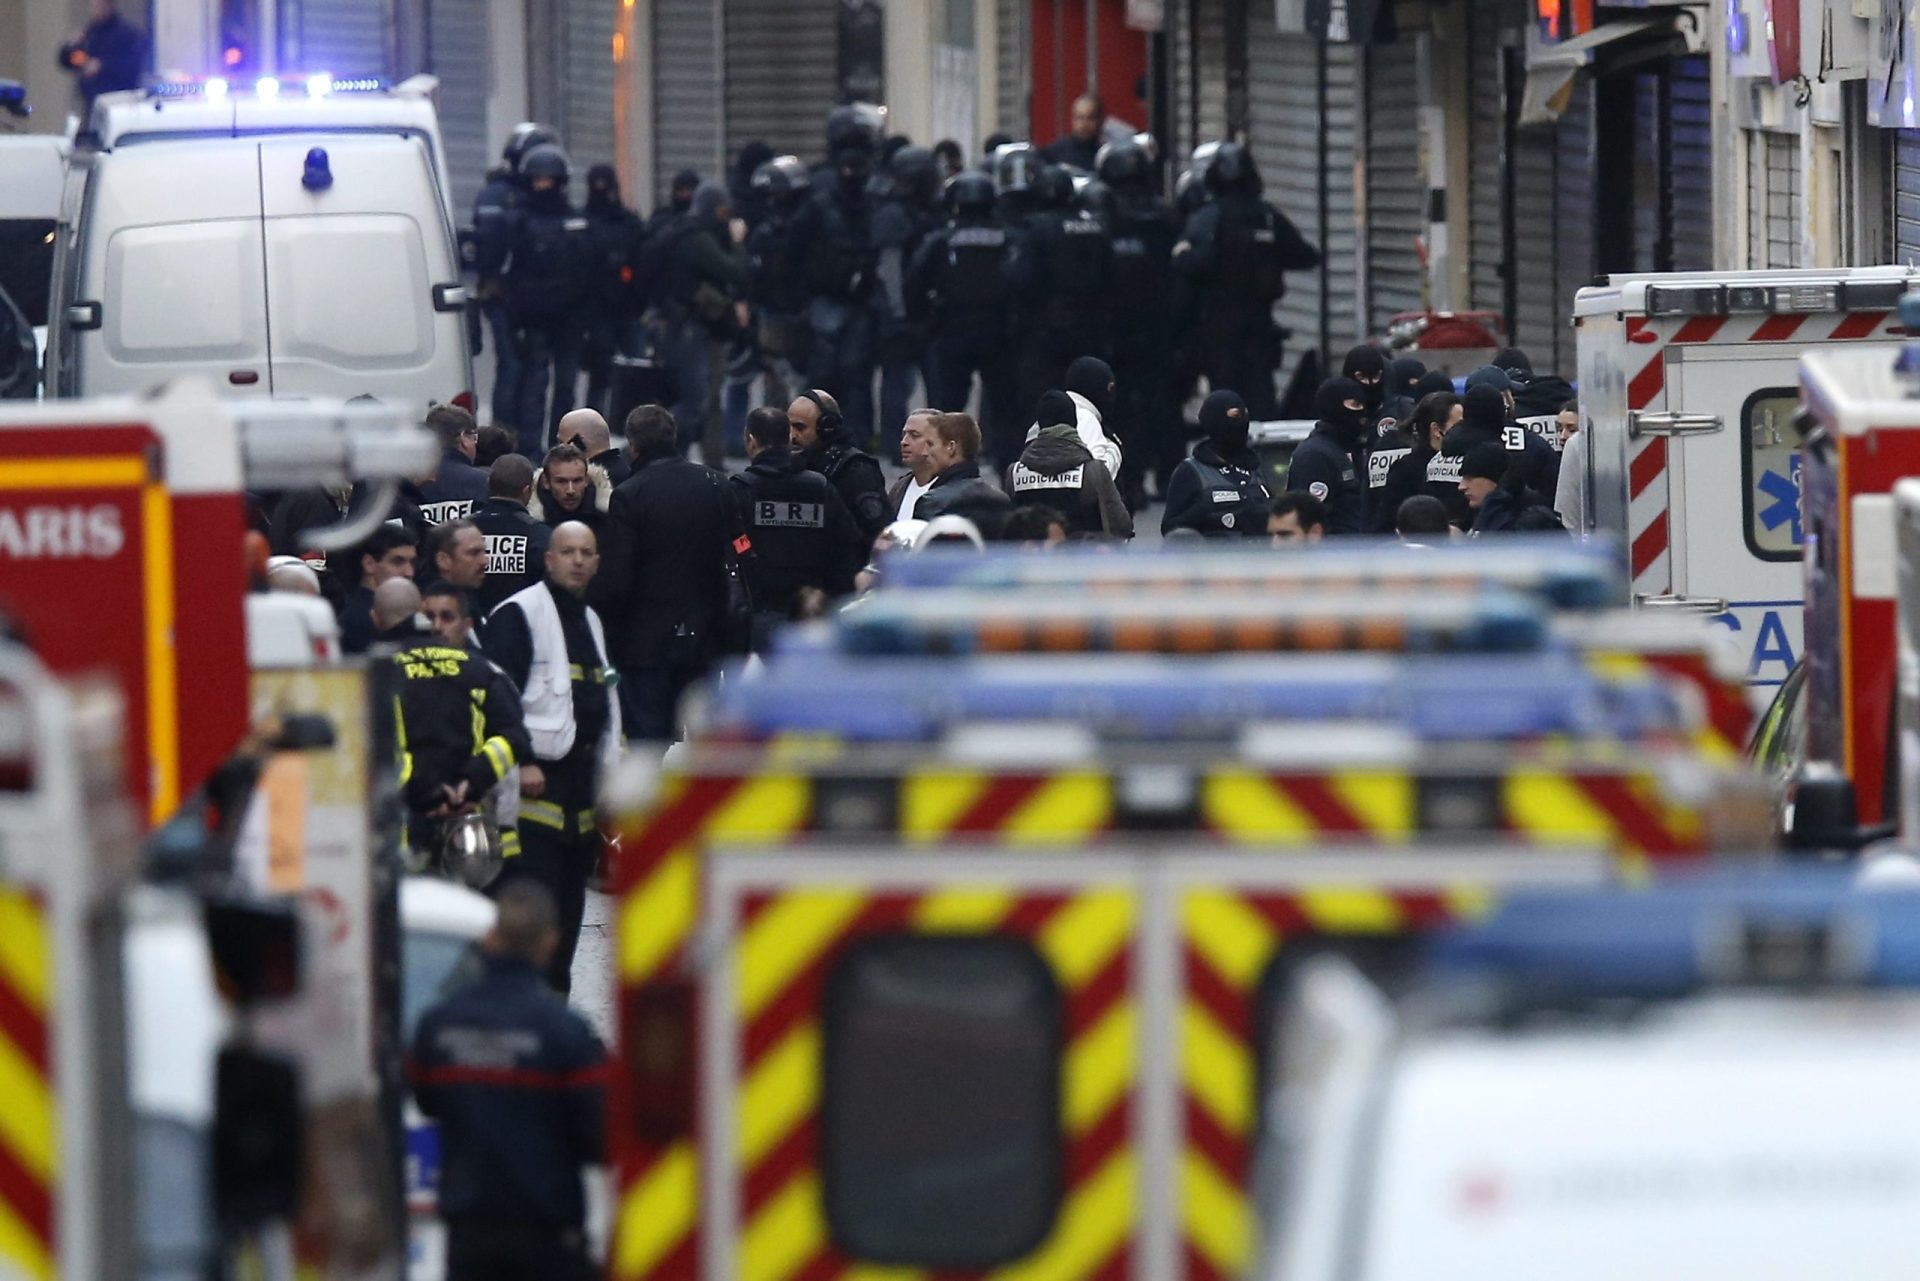 Portugueses descrevem aparato policial em operação em Saint-Denis